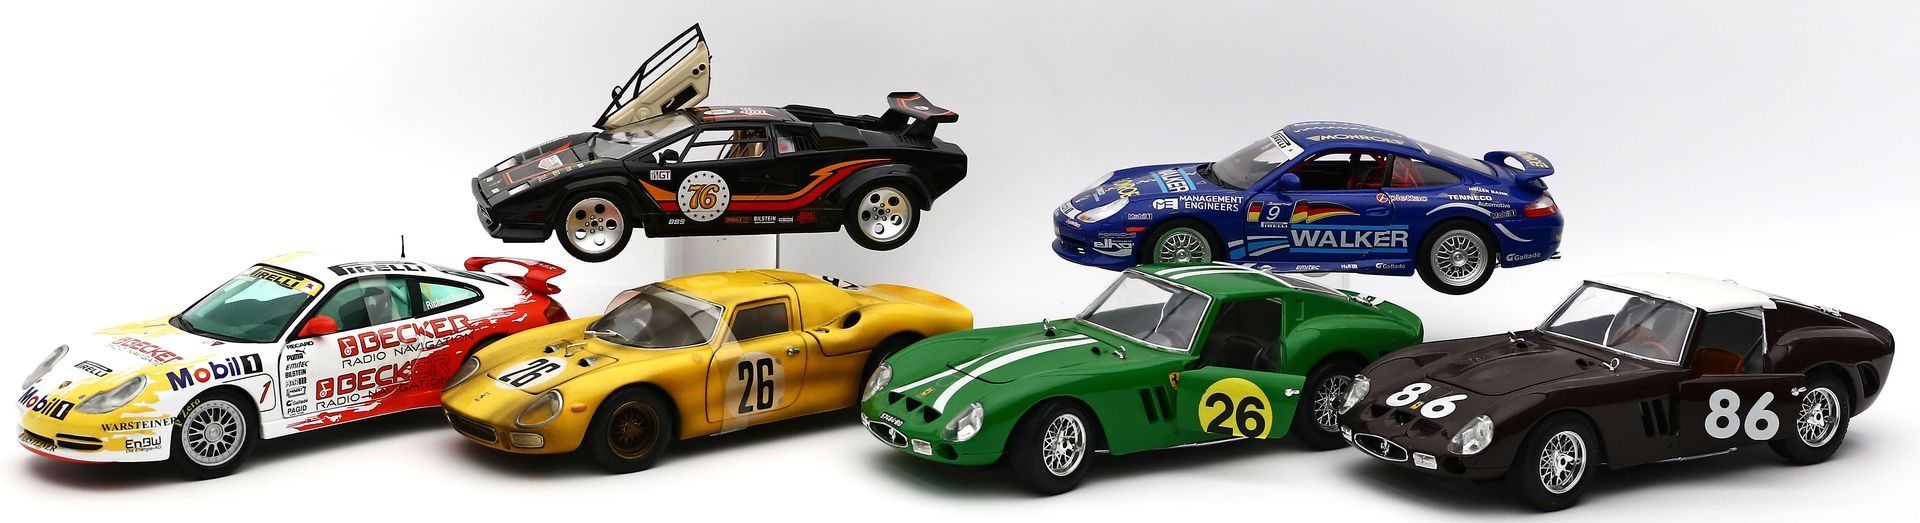 6 Ferrari-Modellautos.